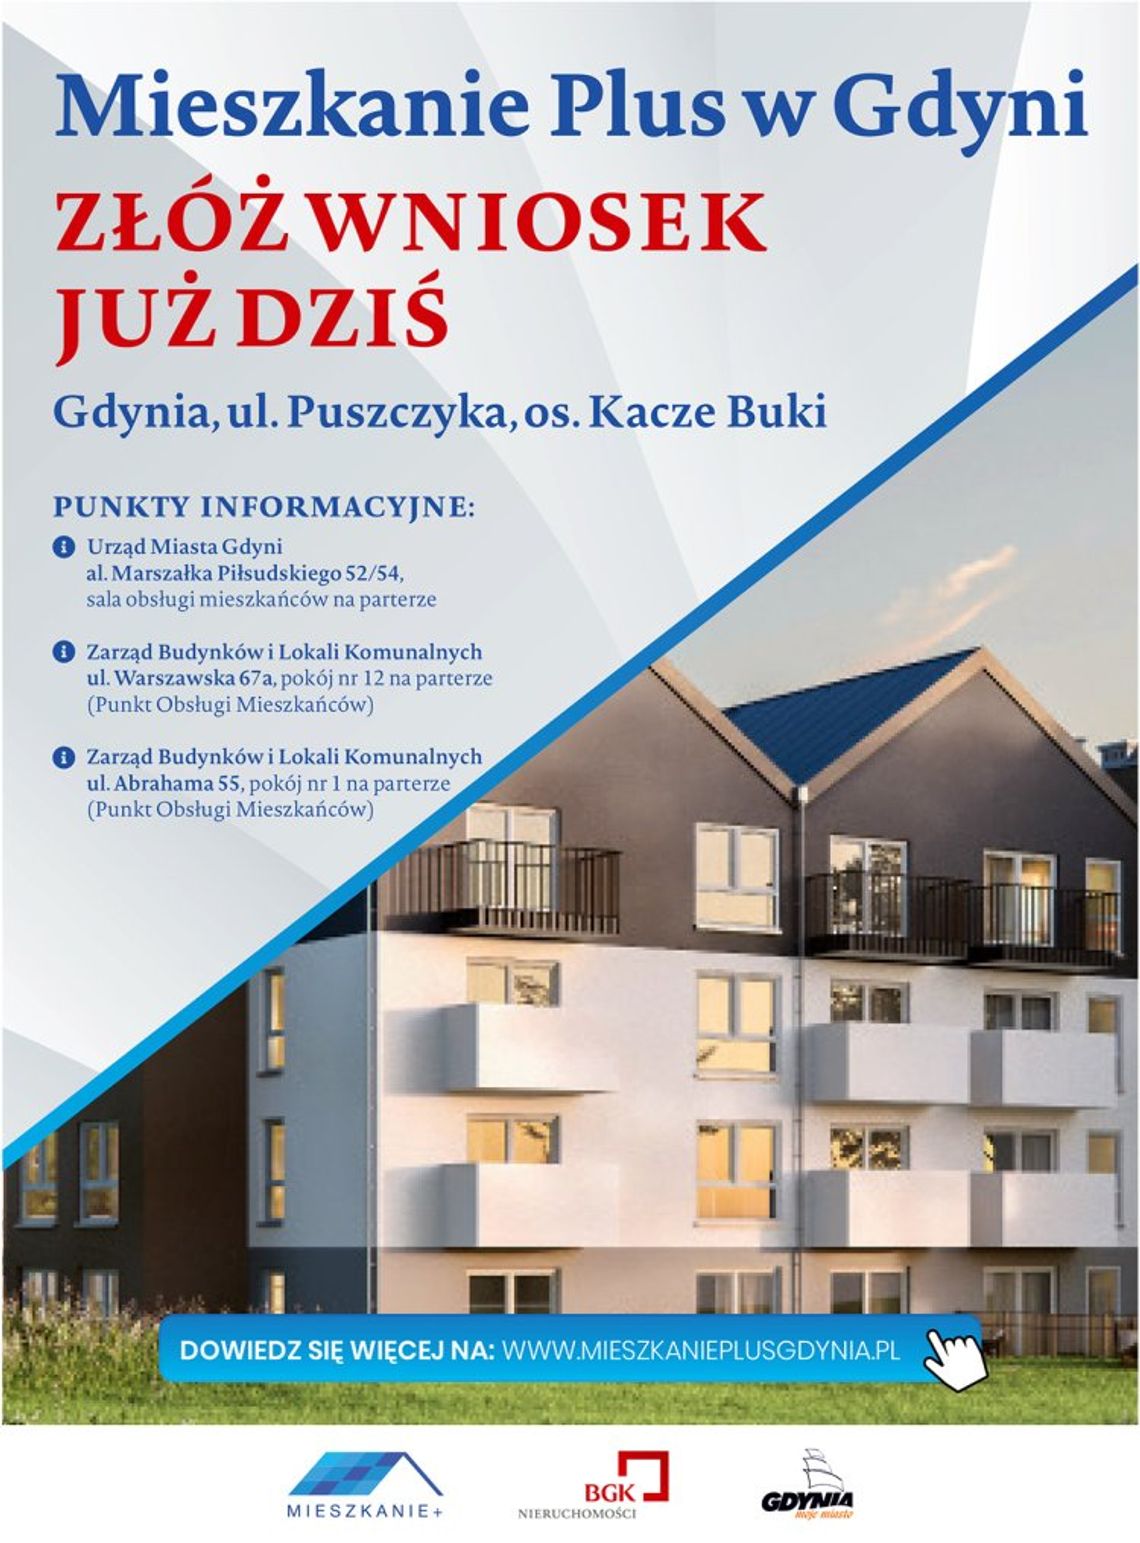 Mieszkanie Plus w Gdyni: ruszył nabór do 172 mieszkań